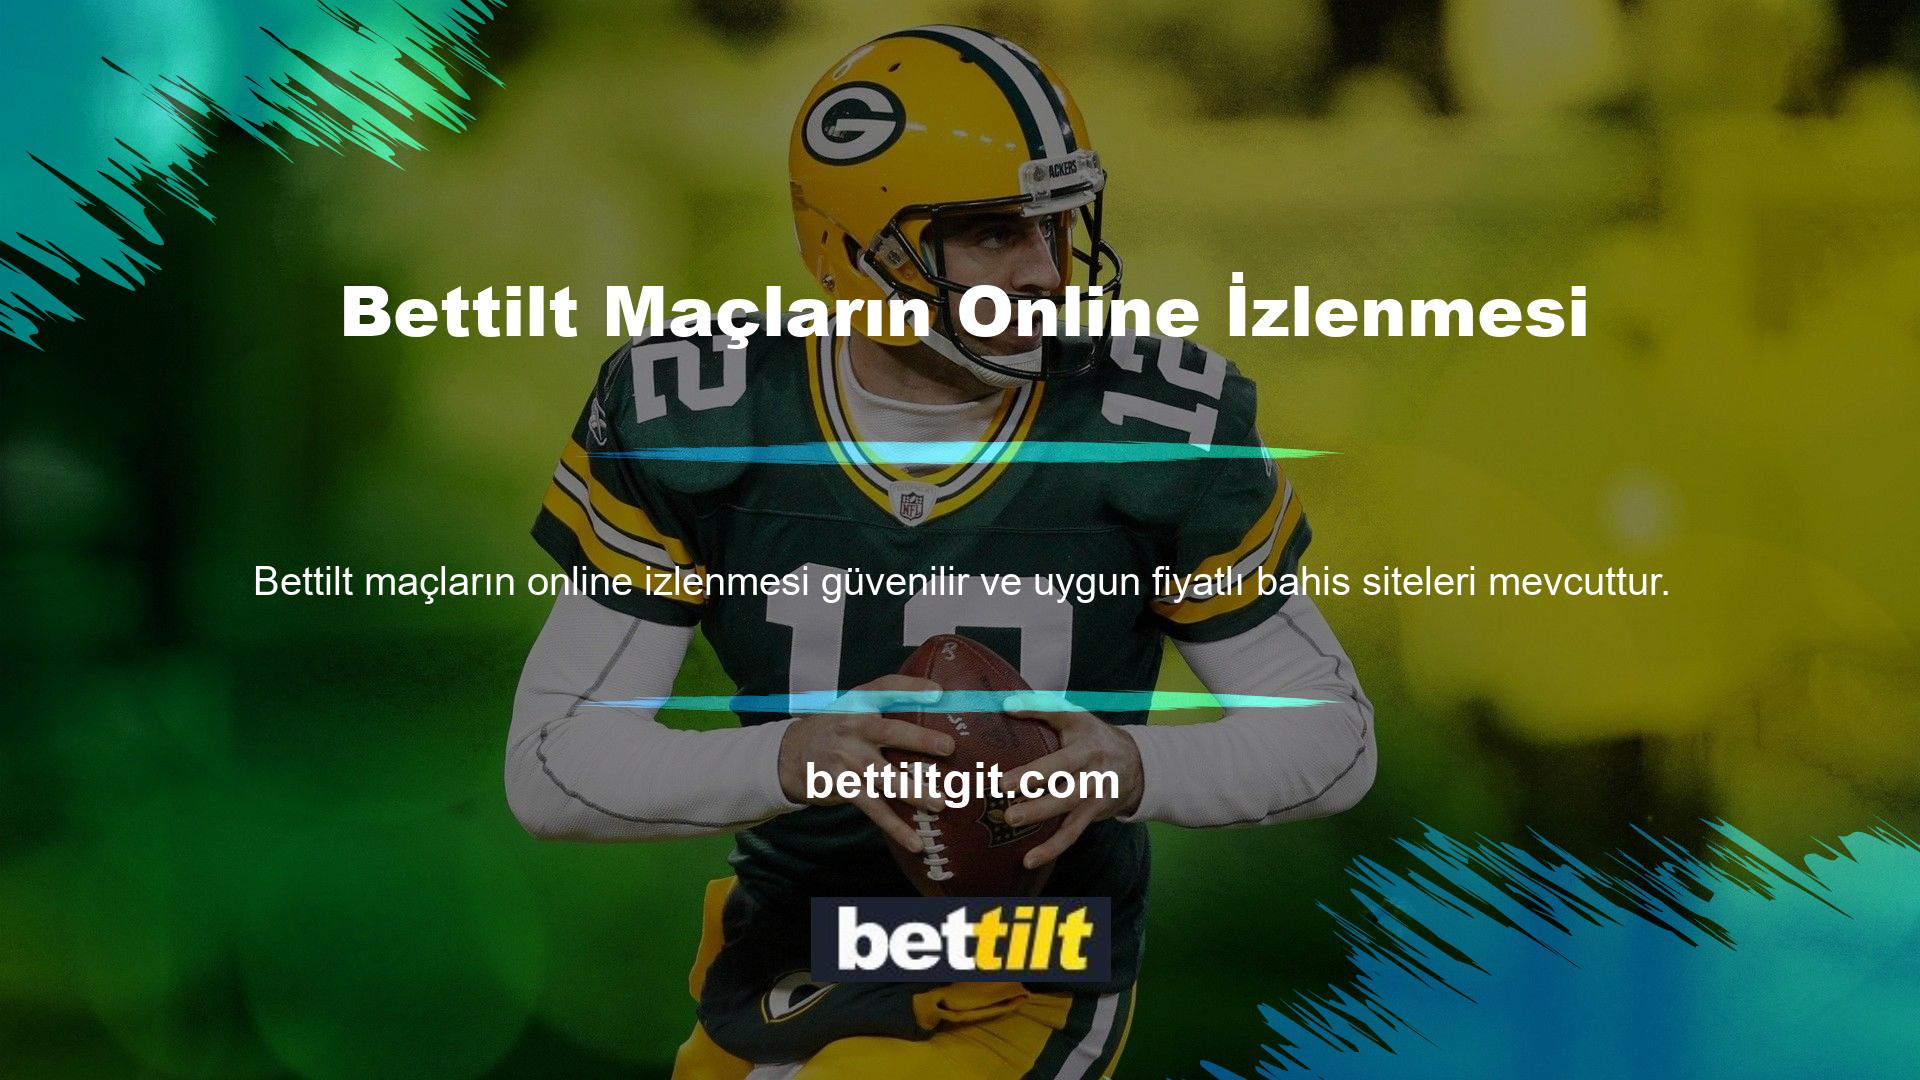 Maçların online izlenebileceği en iyi sitelerden biri olan Bettilt TV, yayın politikasından ve kalitesinden ödün vermeden bu konferansı sürdürmeye kararlıdır